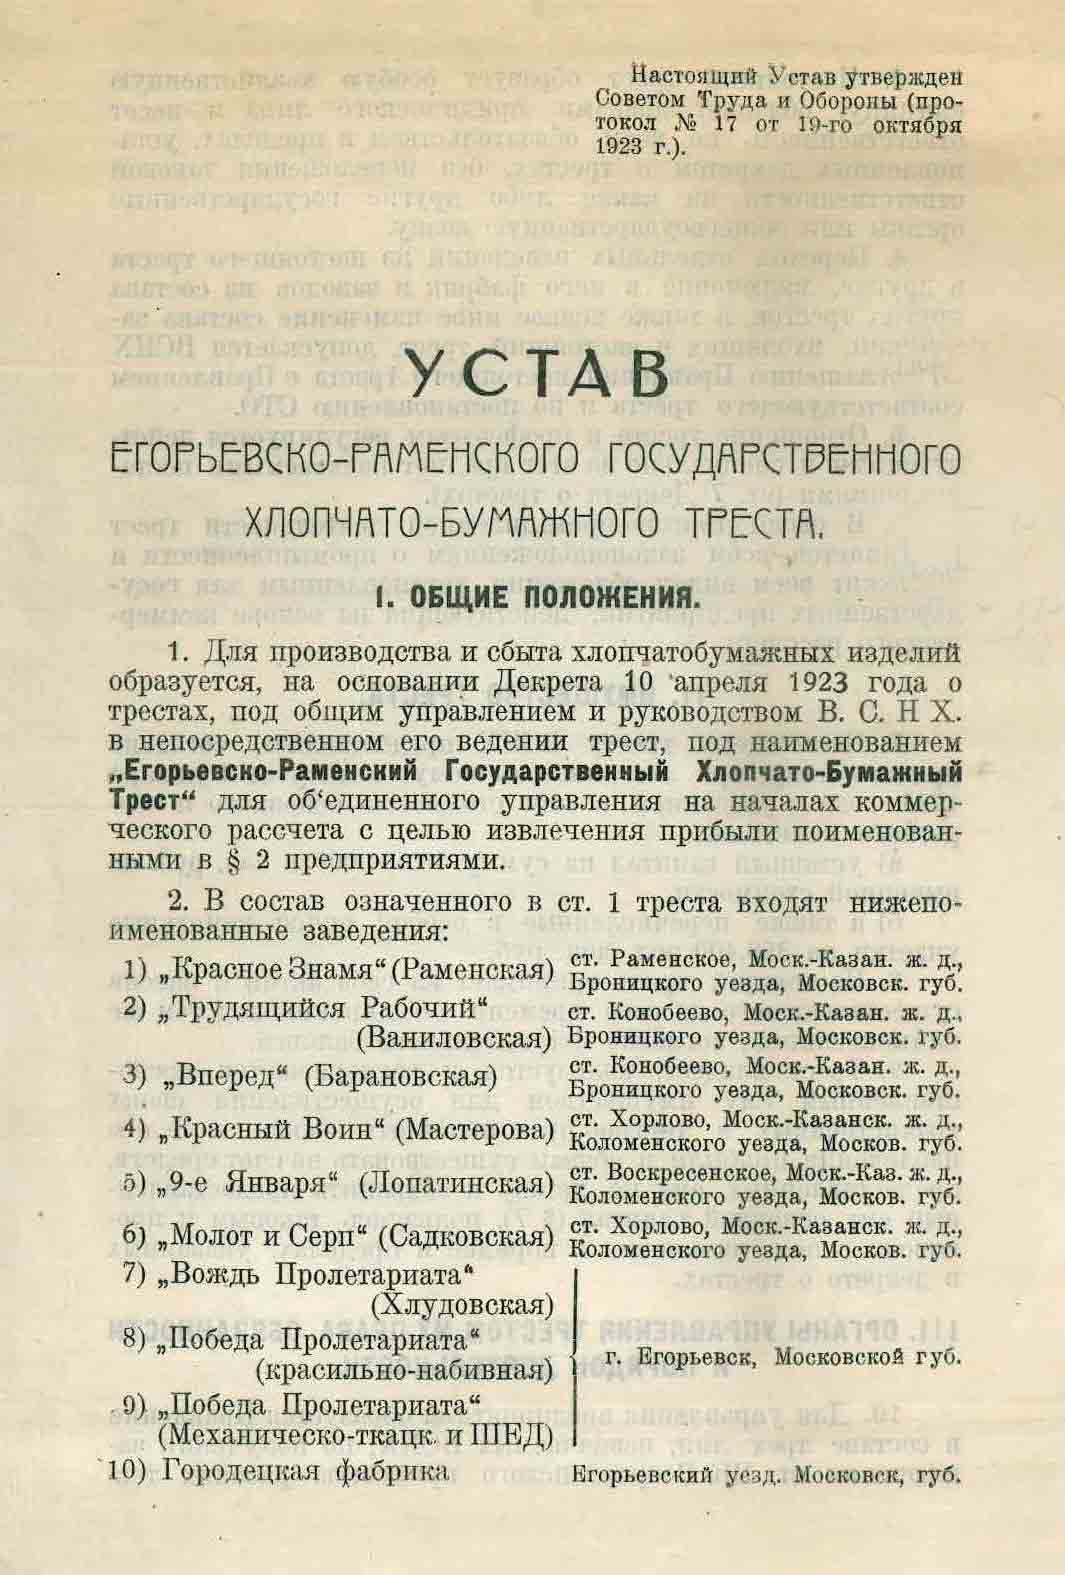 Устав Егорьевско-Раменского Треста 1923 г.